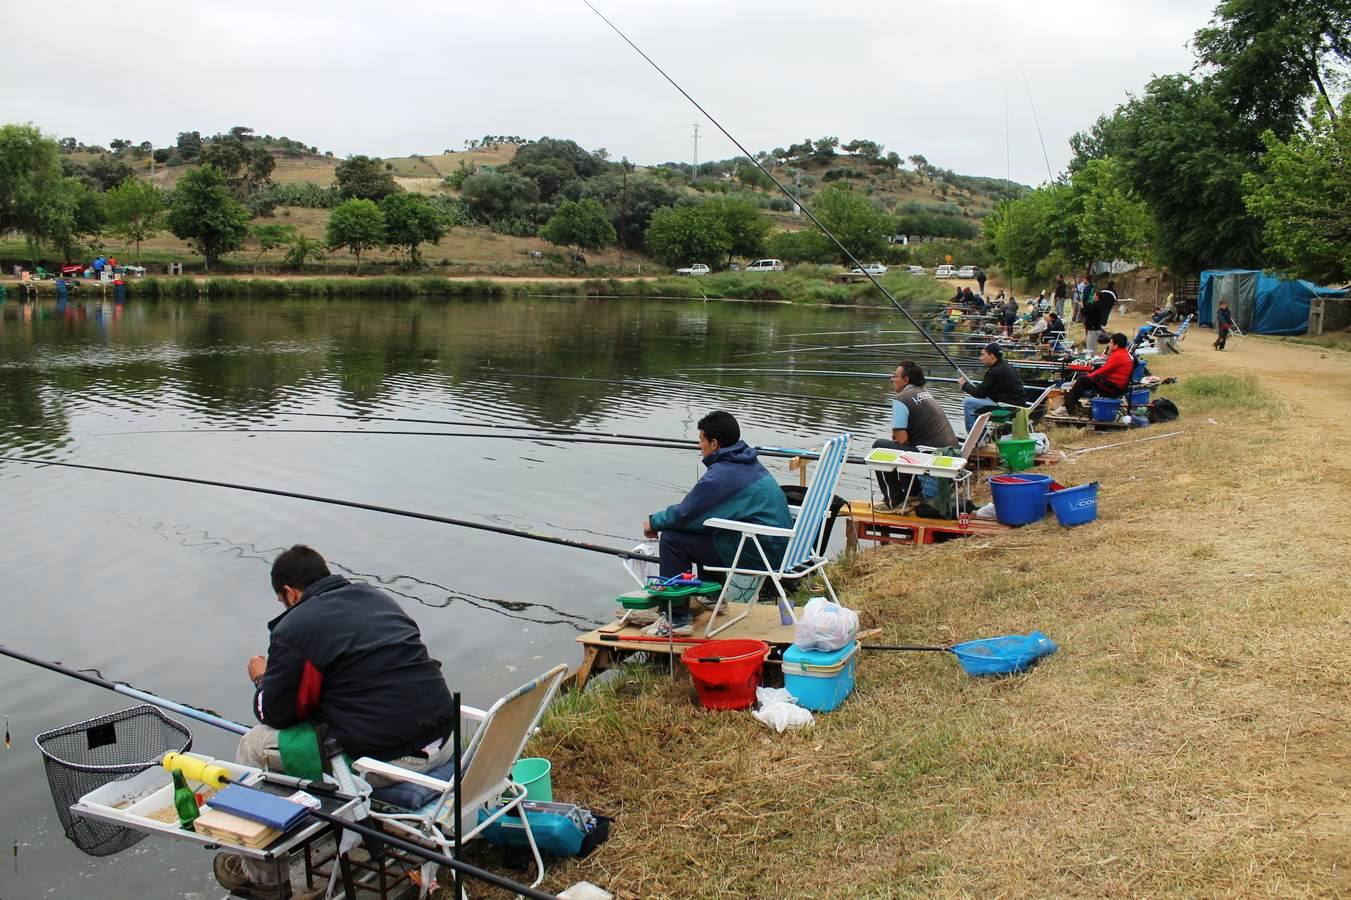 El concurso reúne cada año a un gran número de pescadores en torno a la charca.